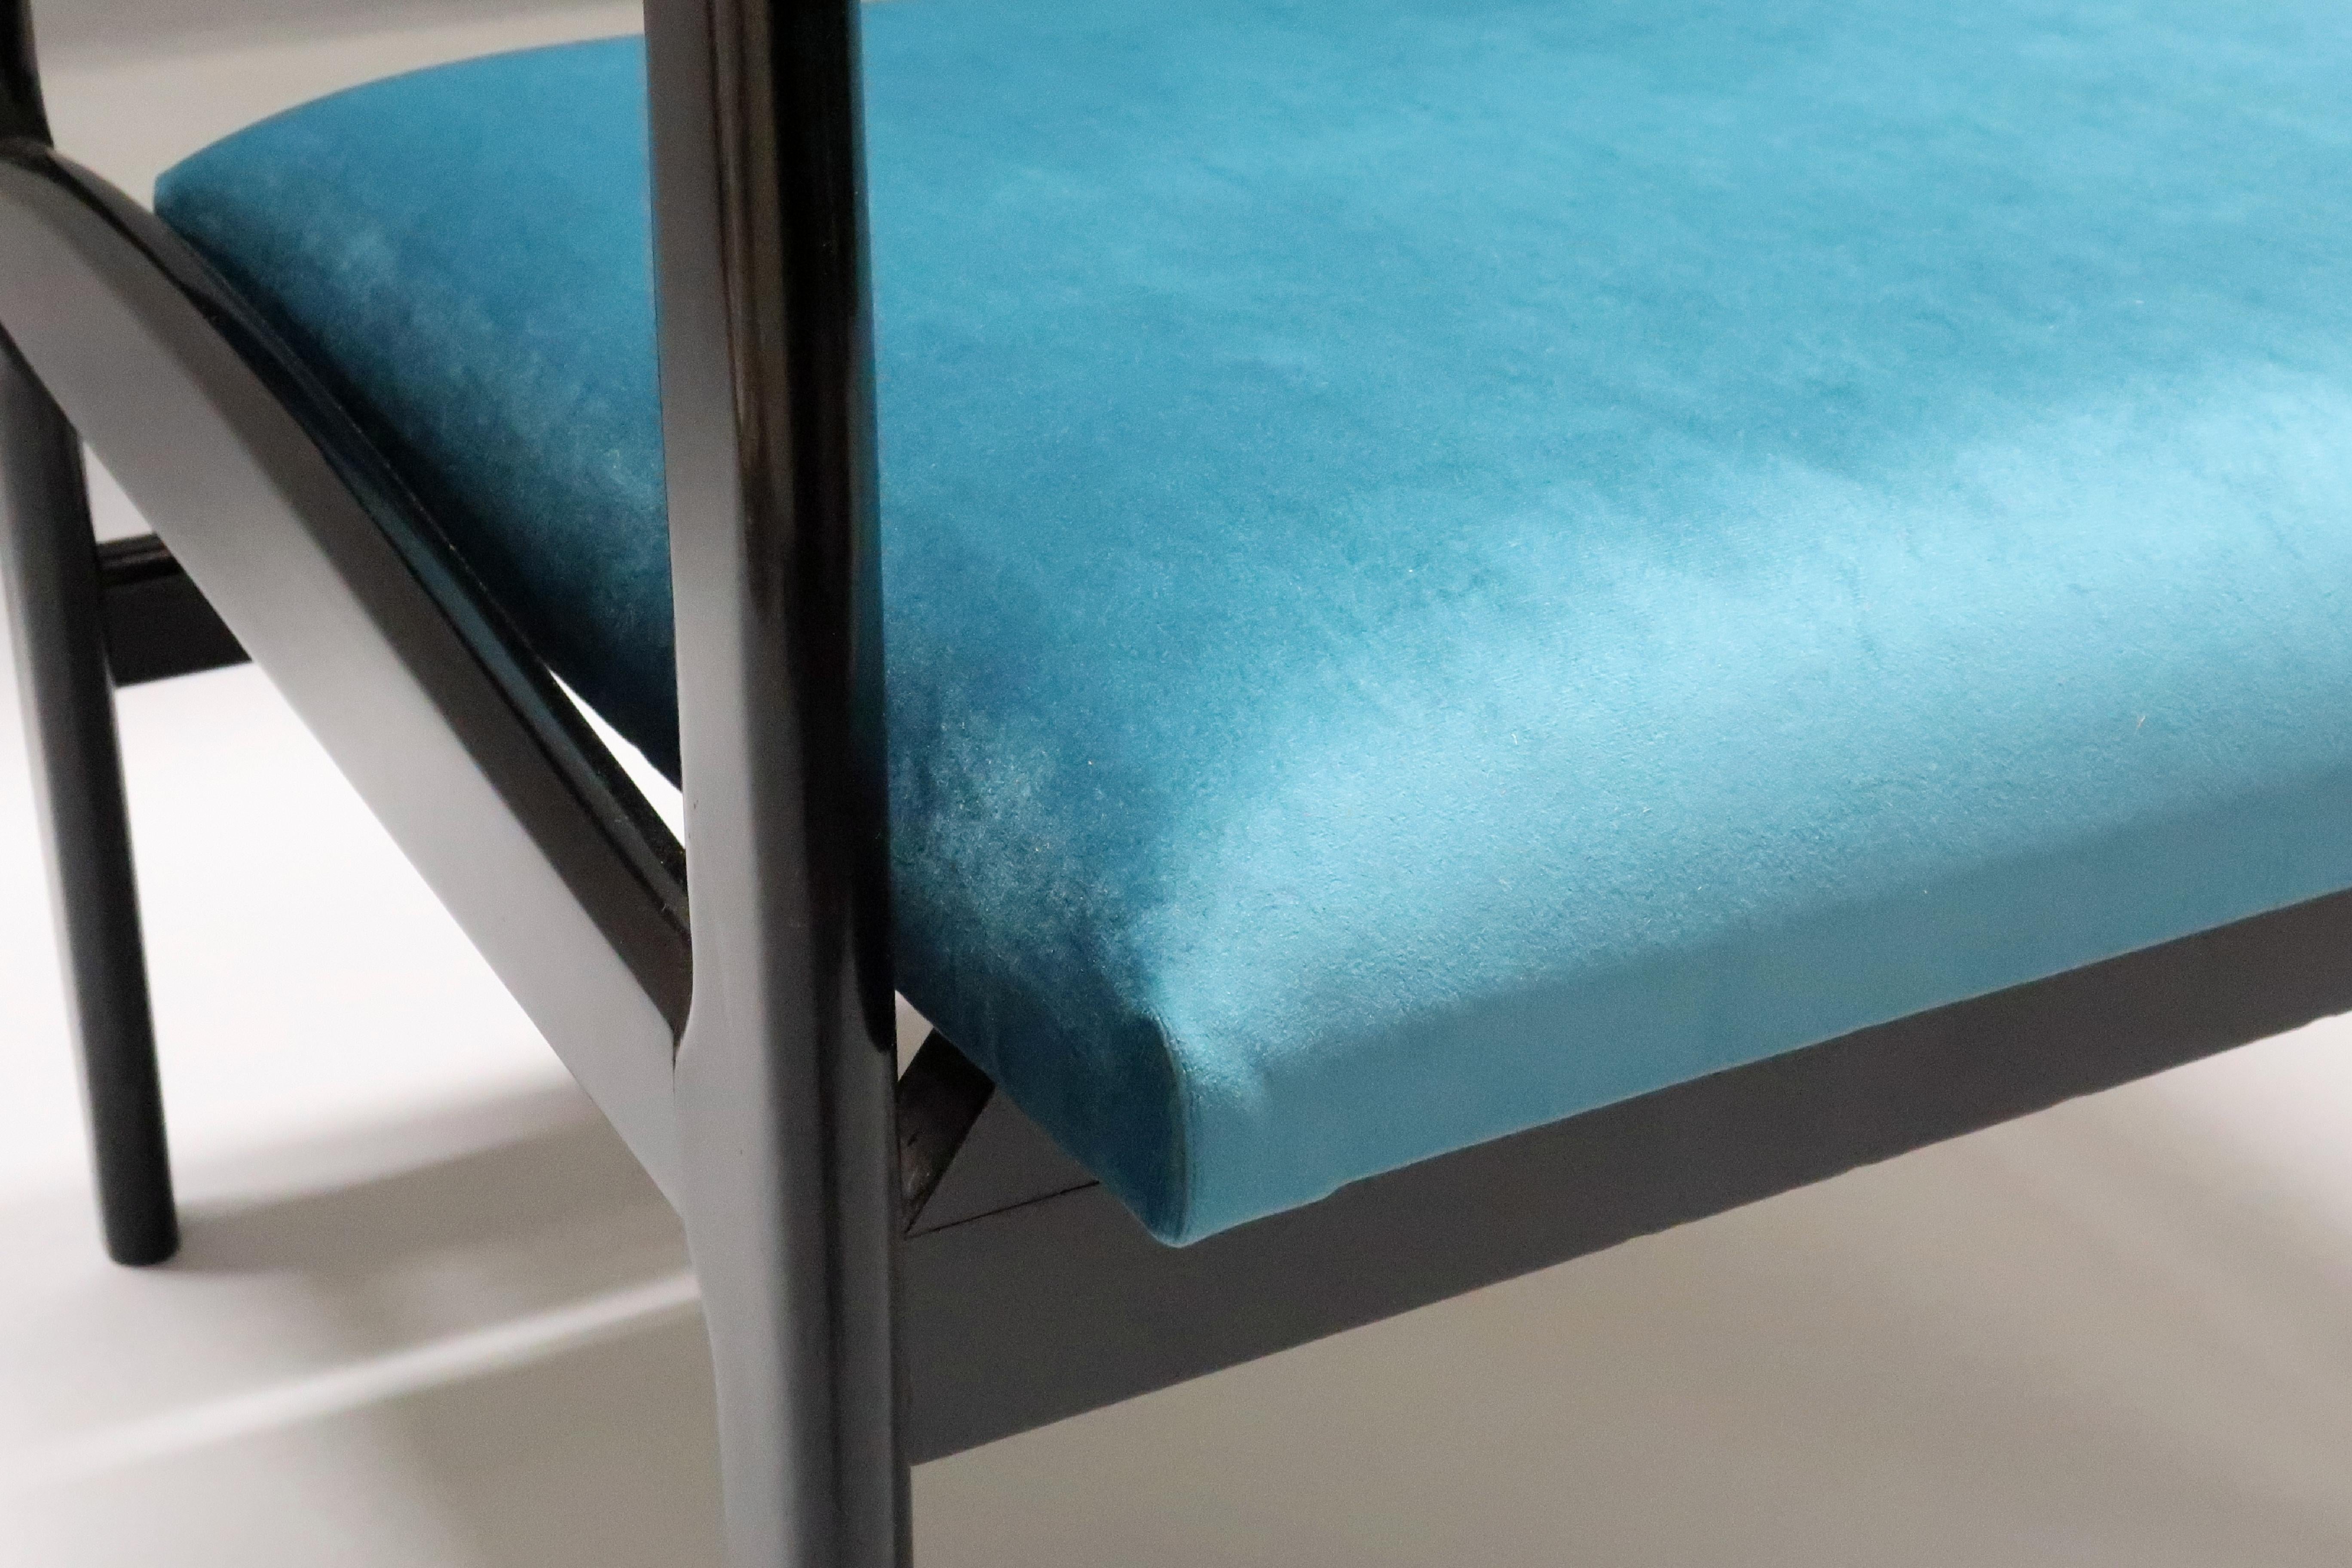 Pair of Italian Midcentury Ebonized Armchairs Upholstered in Teal Velvet For Sale 1